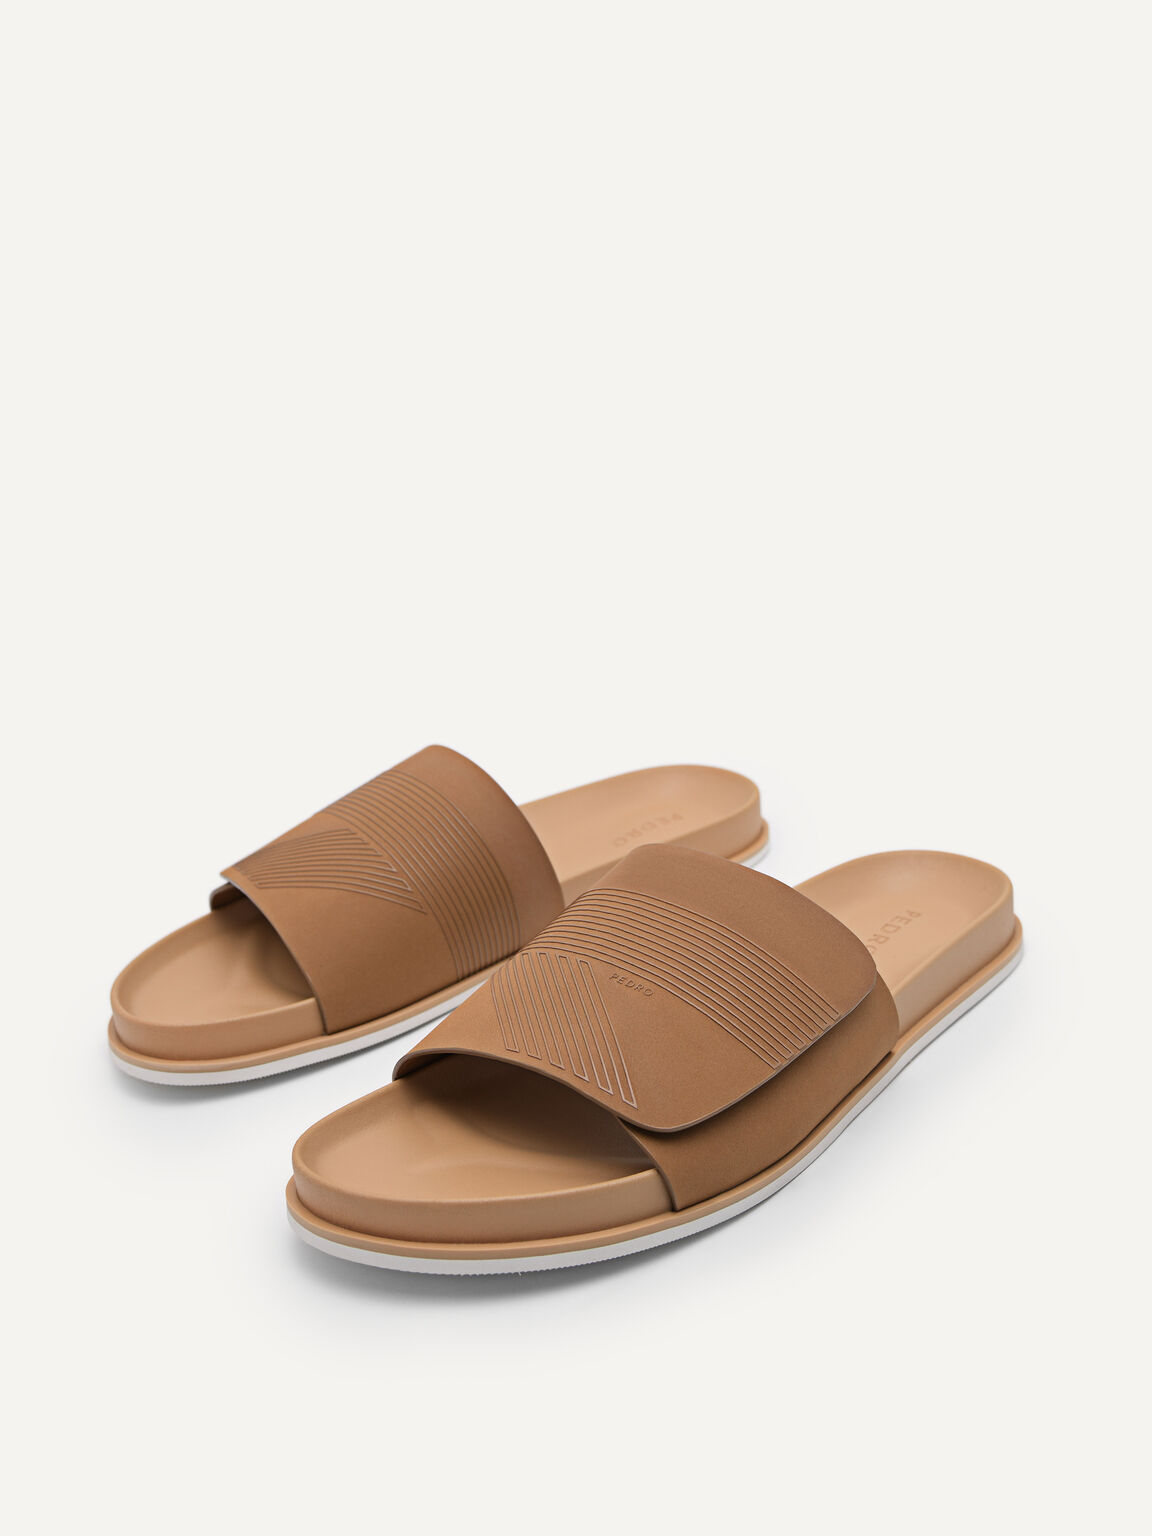 Slide Sandals, Camel